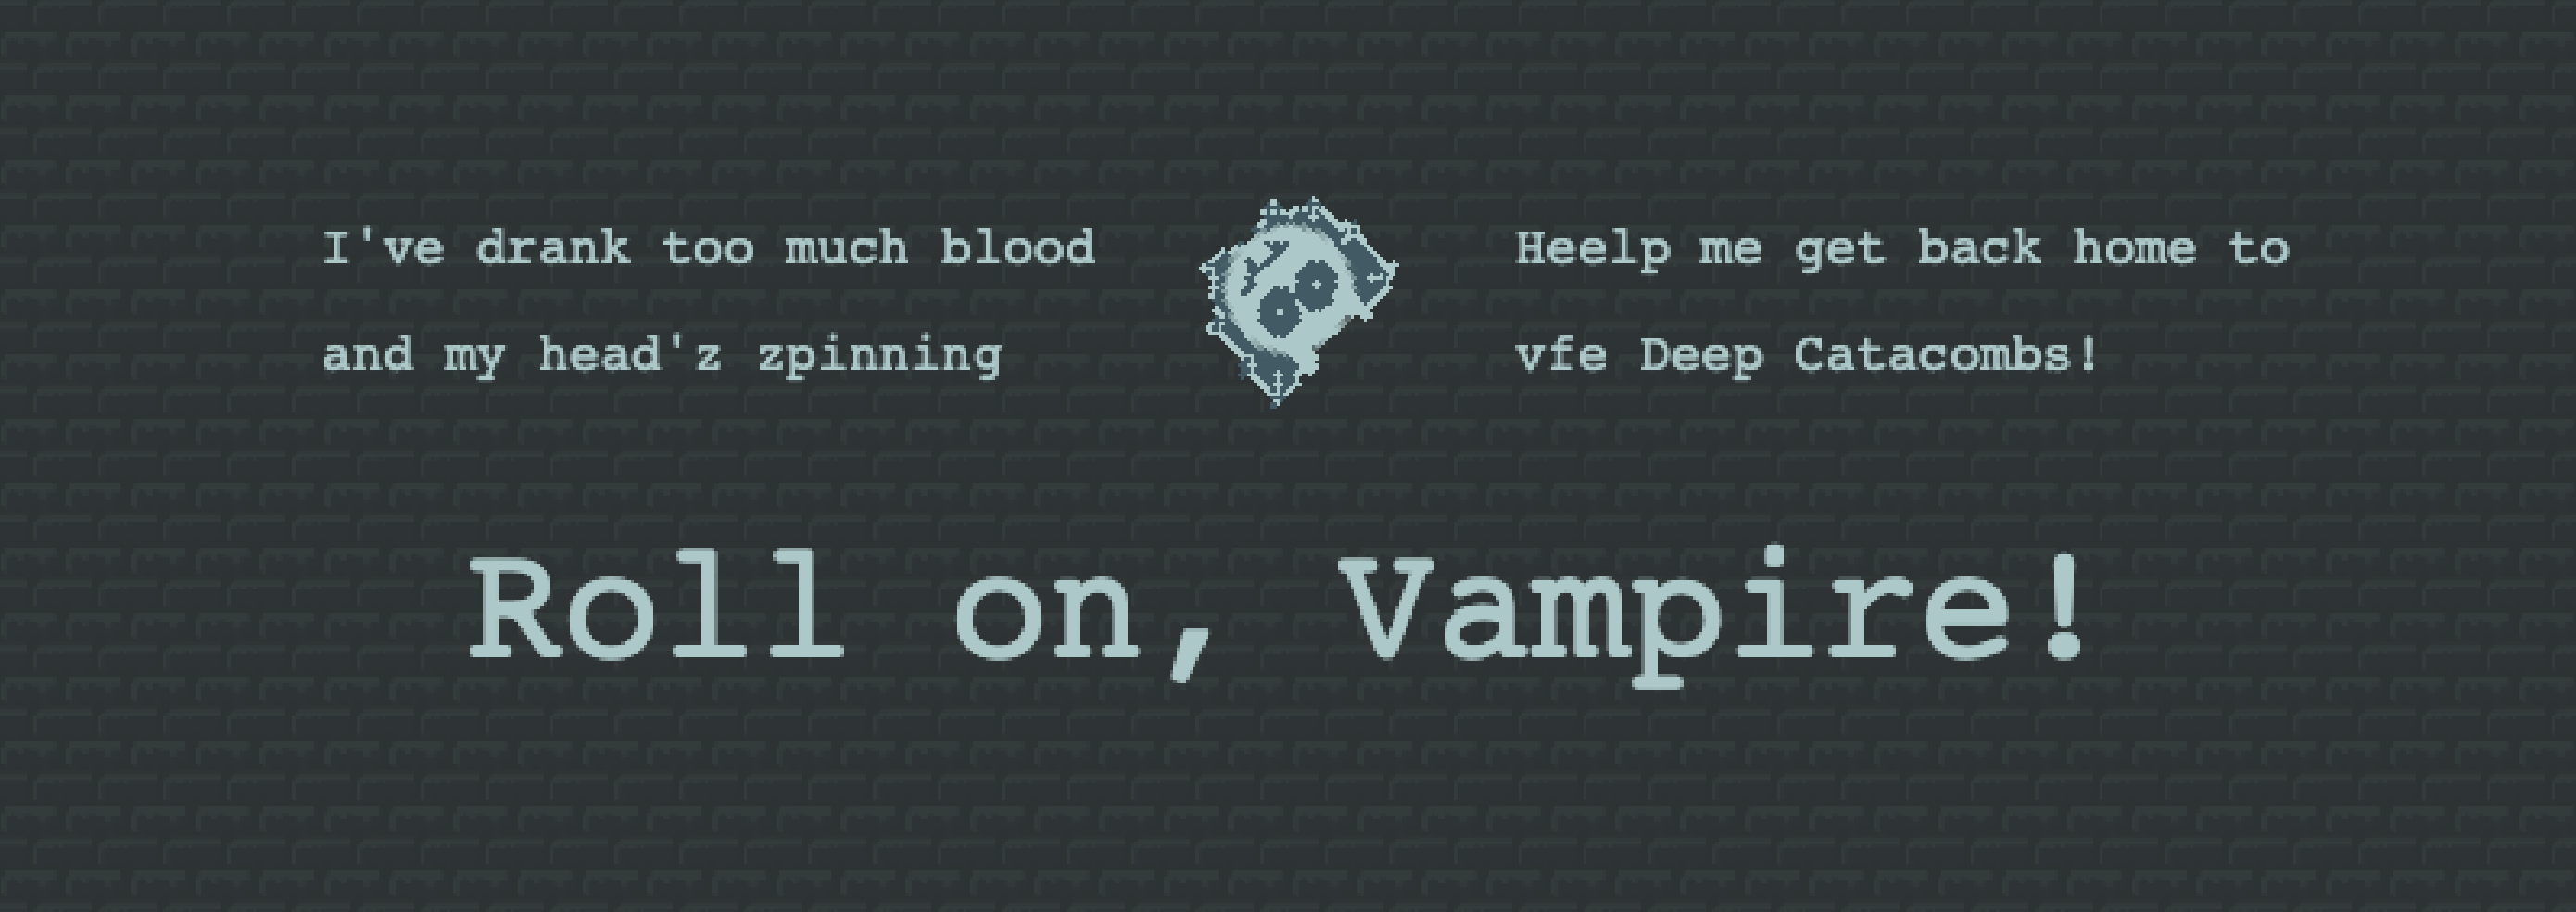 Roll on, Vampire!